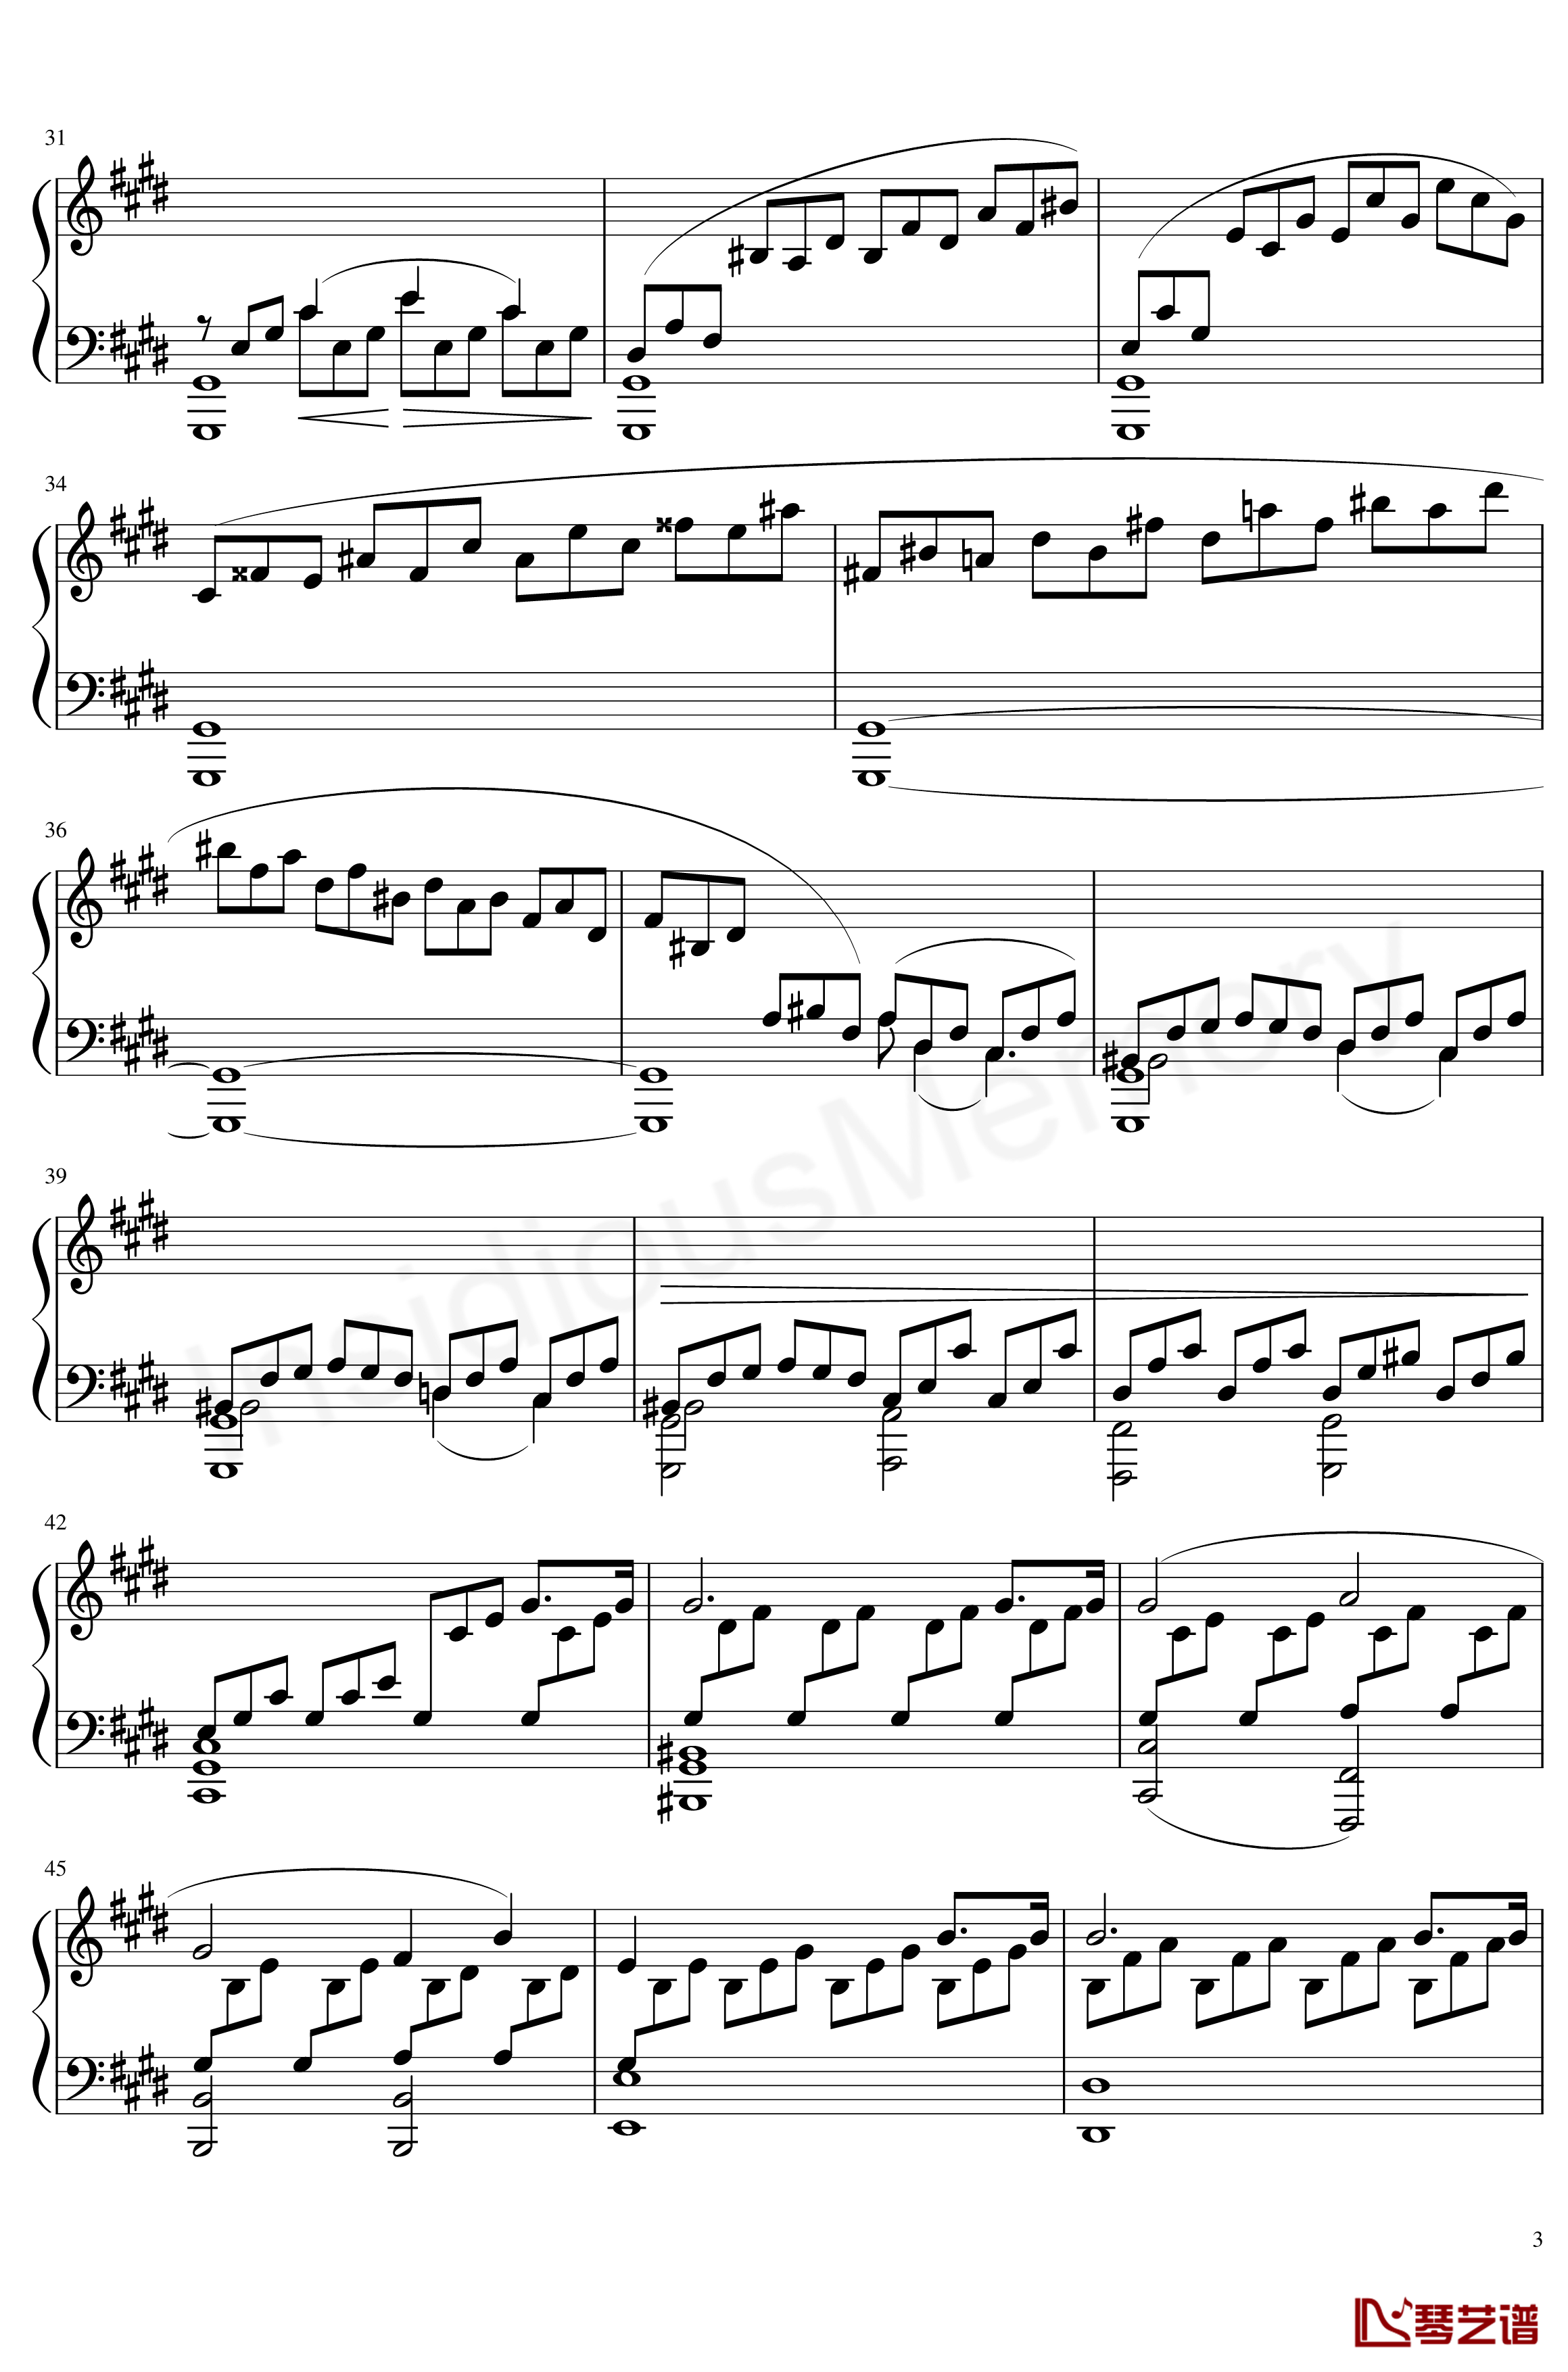 月光奏鸣曲钢琴谱-贝多芬-beethoven3